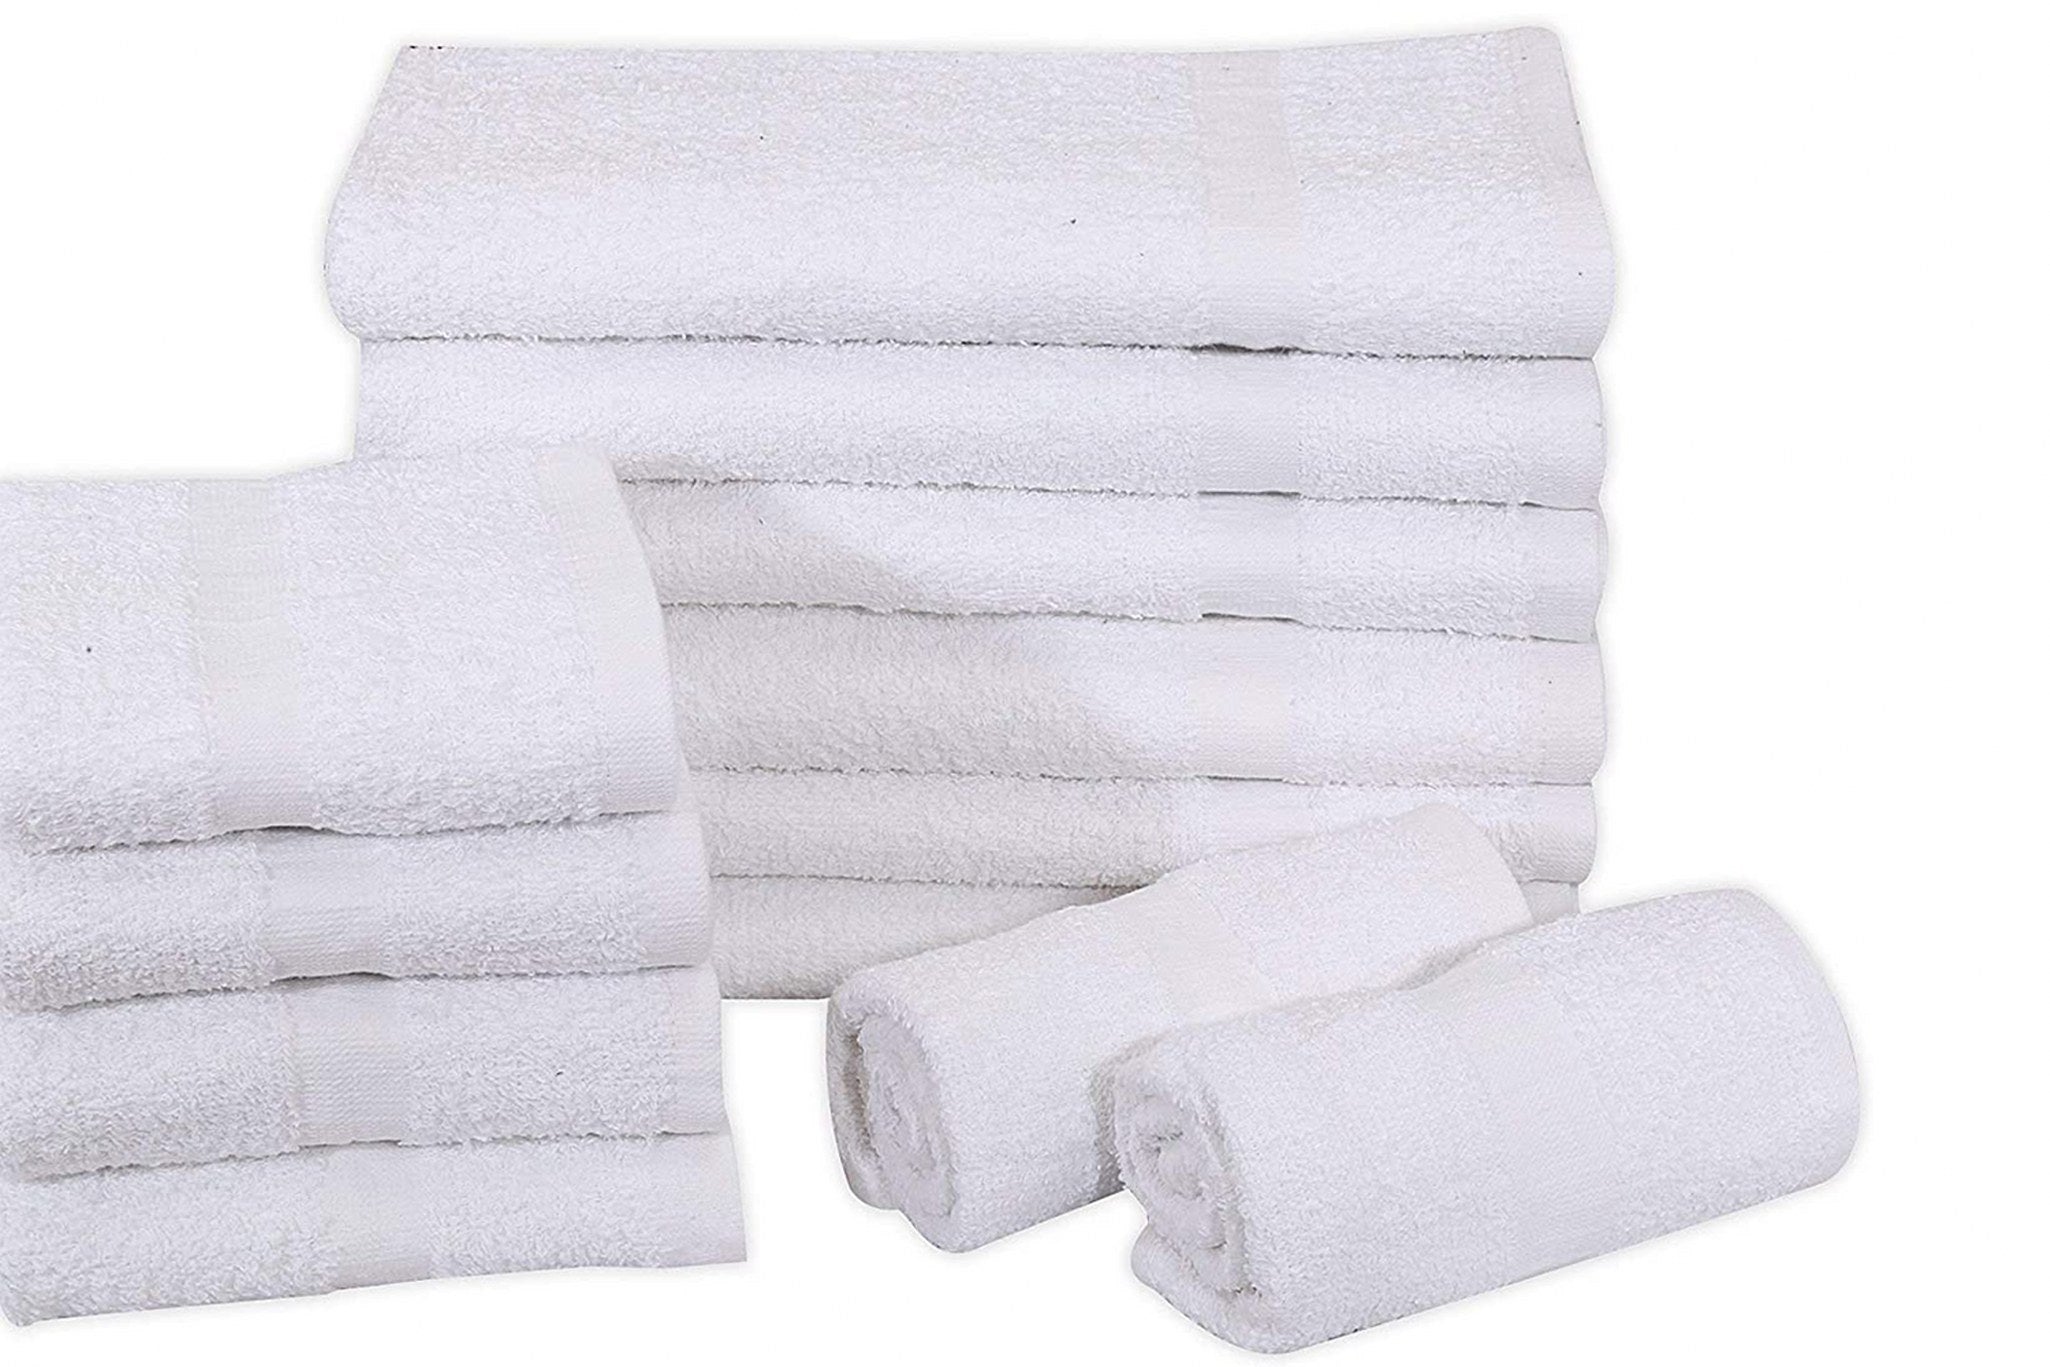 16X30 Wholesale White Gym Towels - Towel Super Center